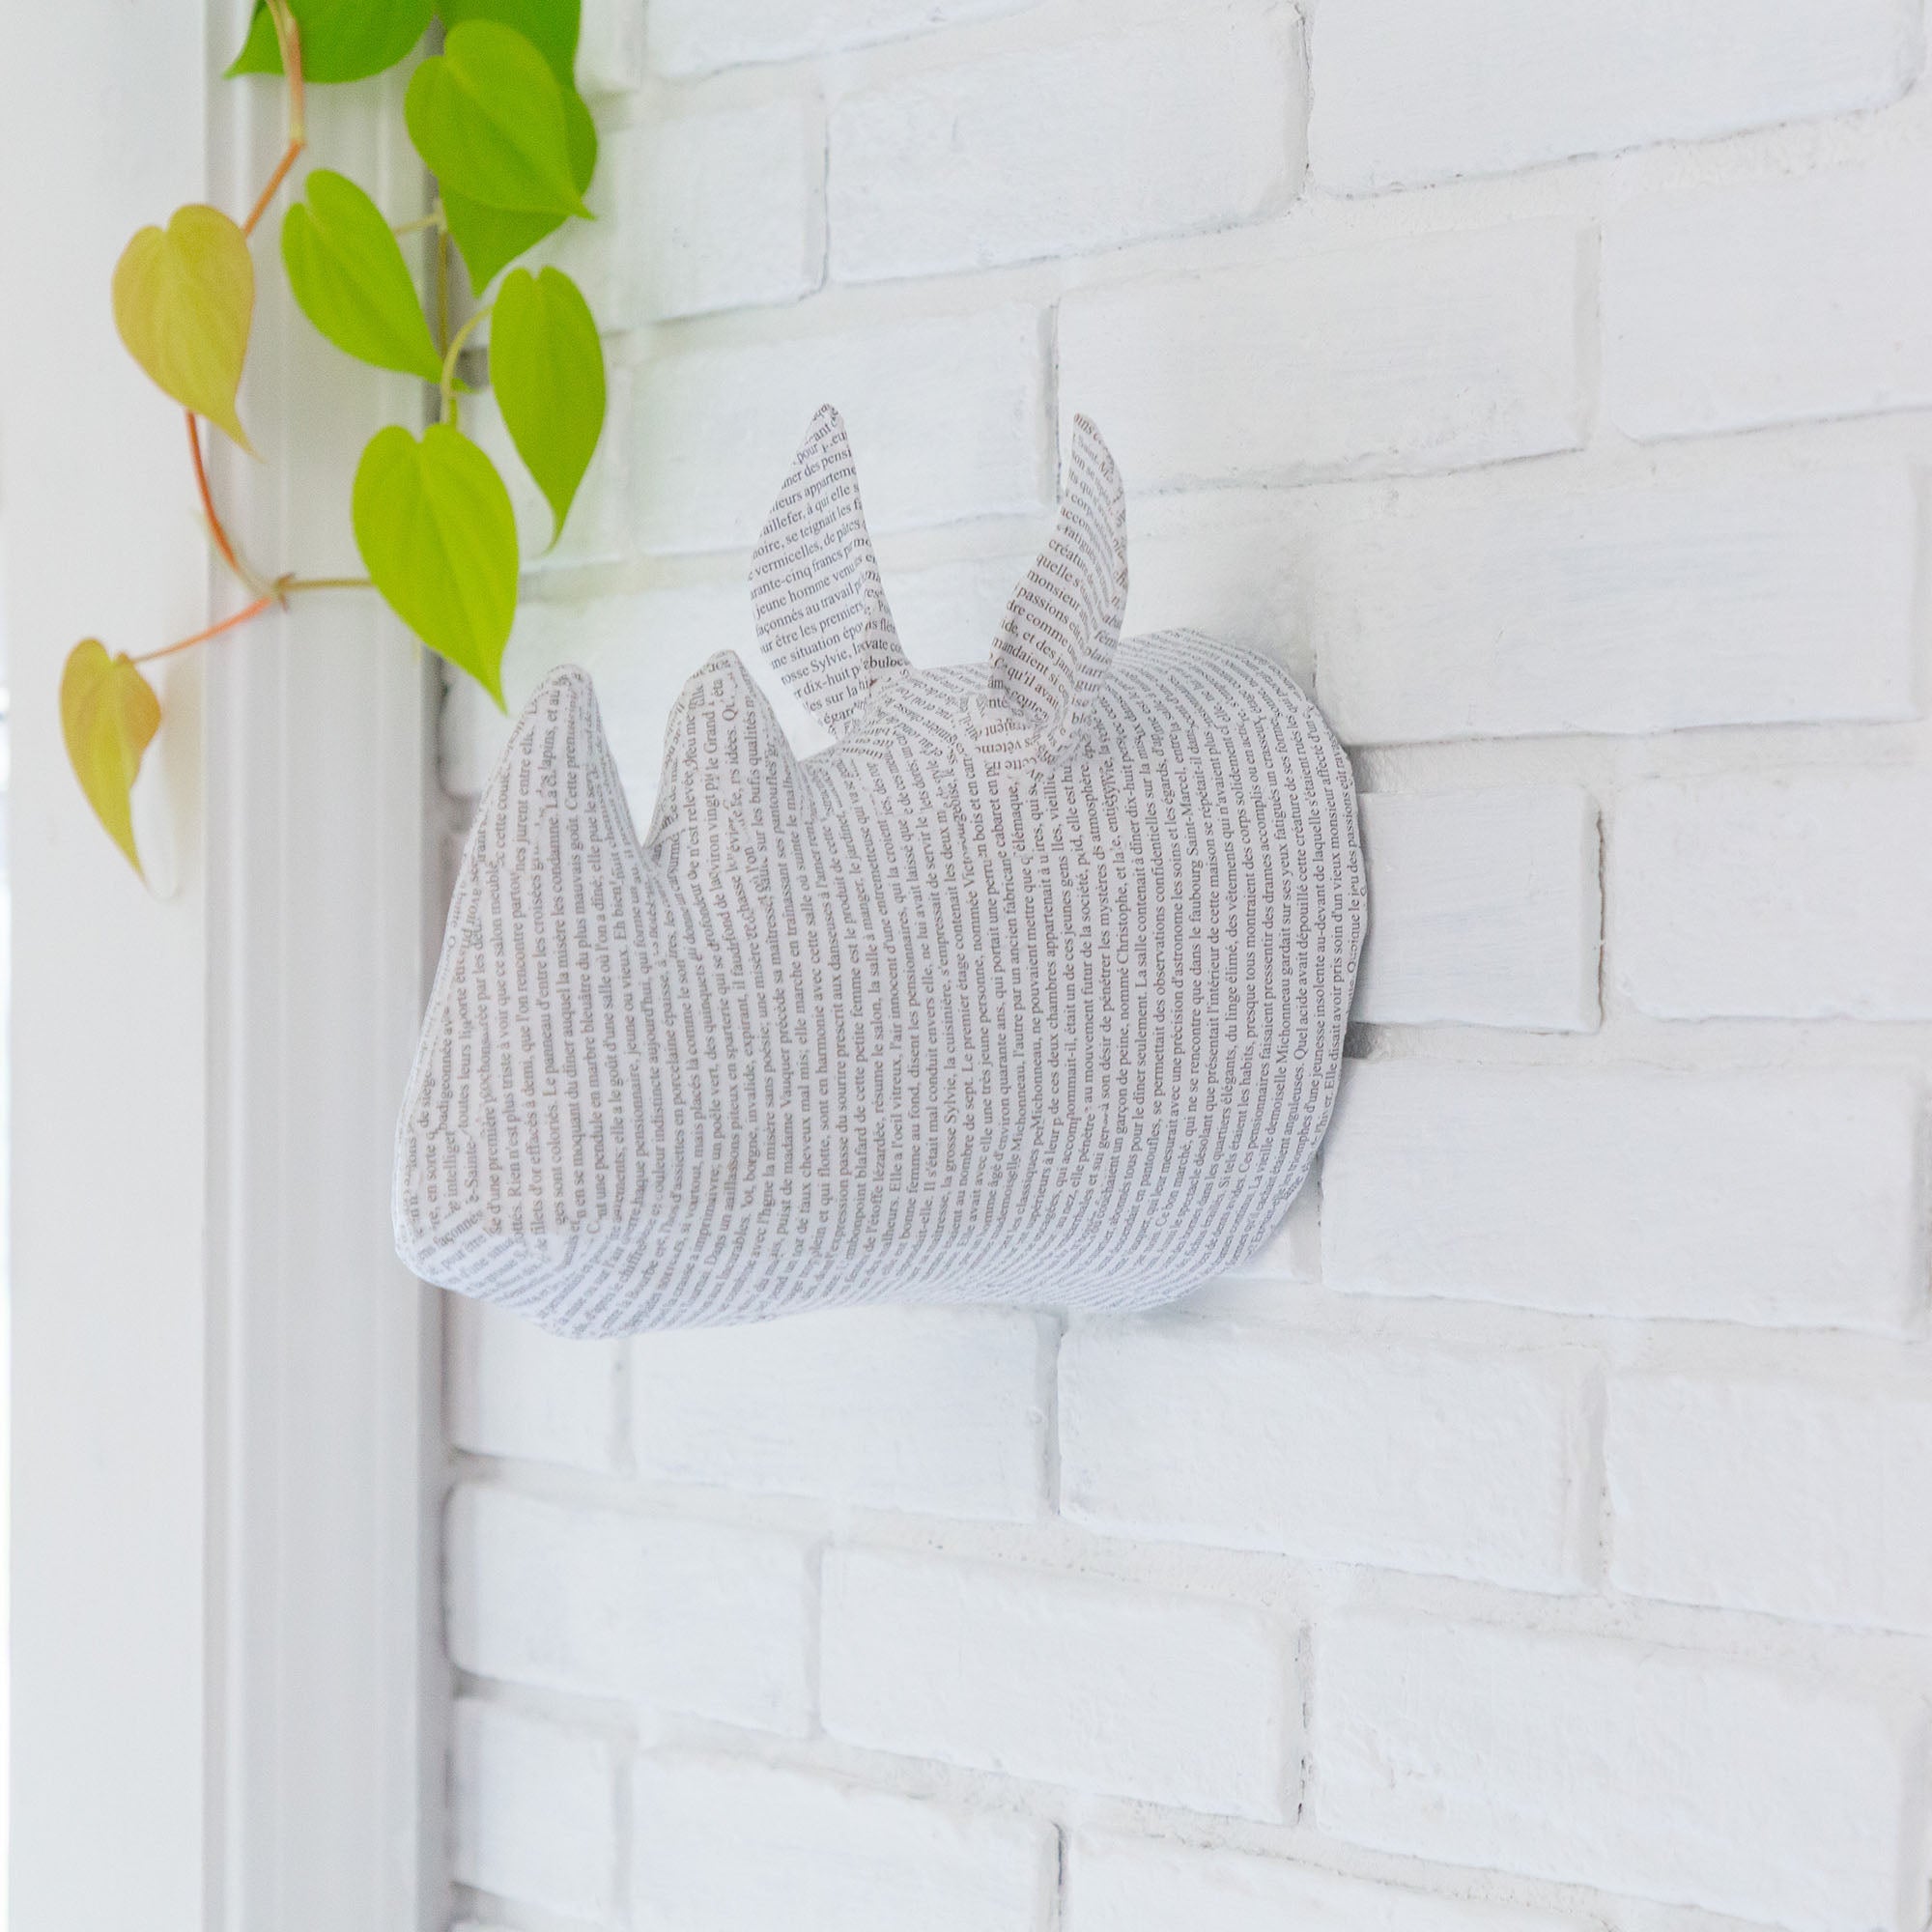 Animal Paper Mache Wall Hanging - Rhino